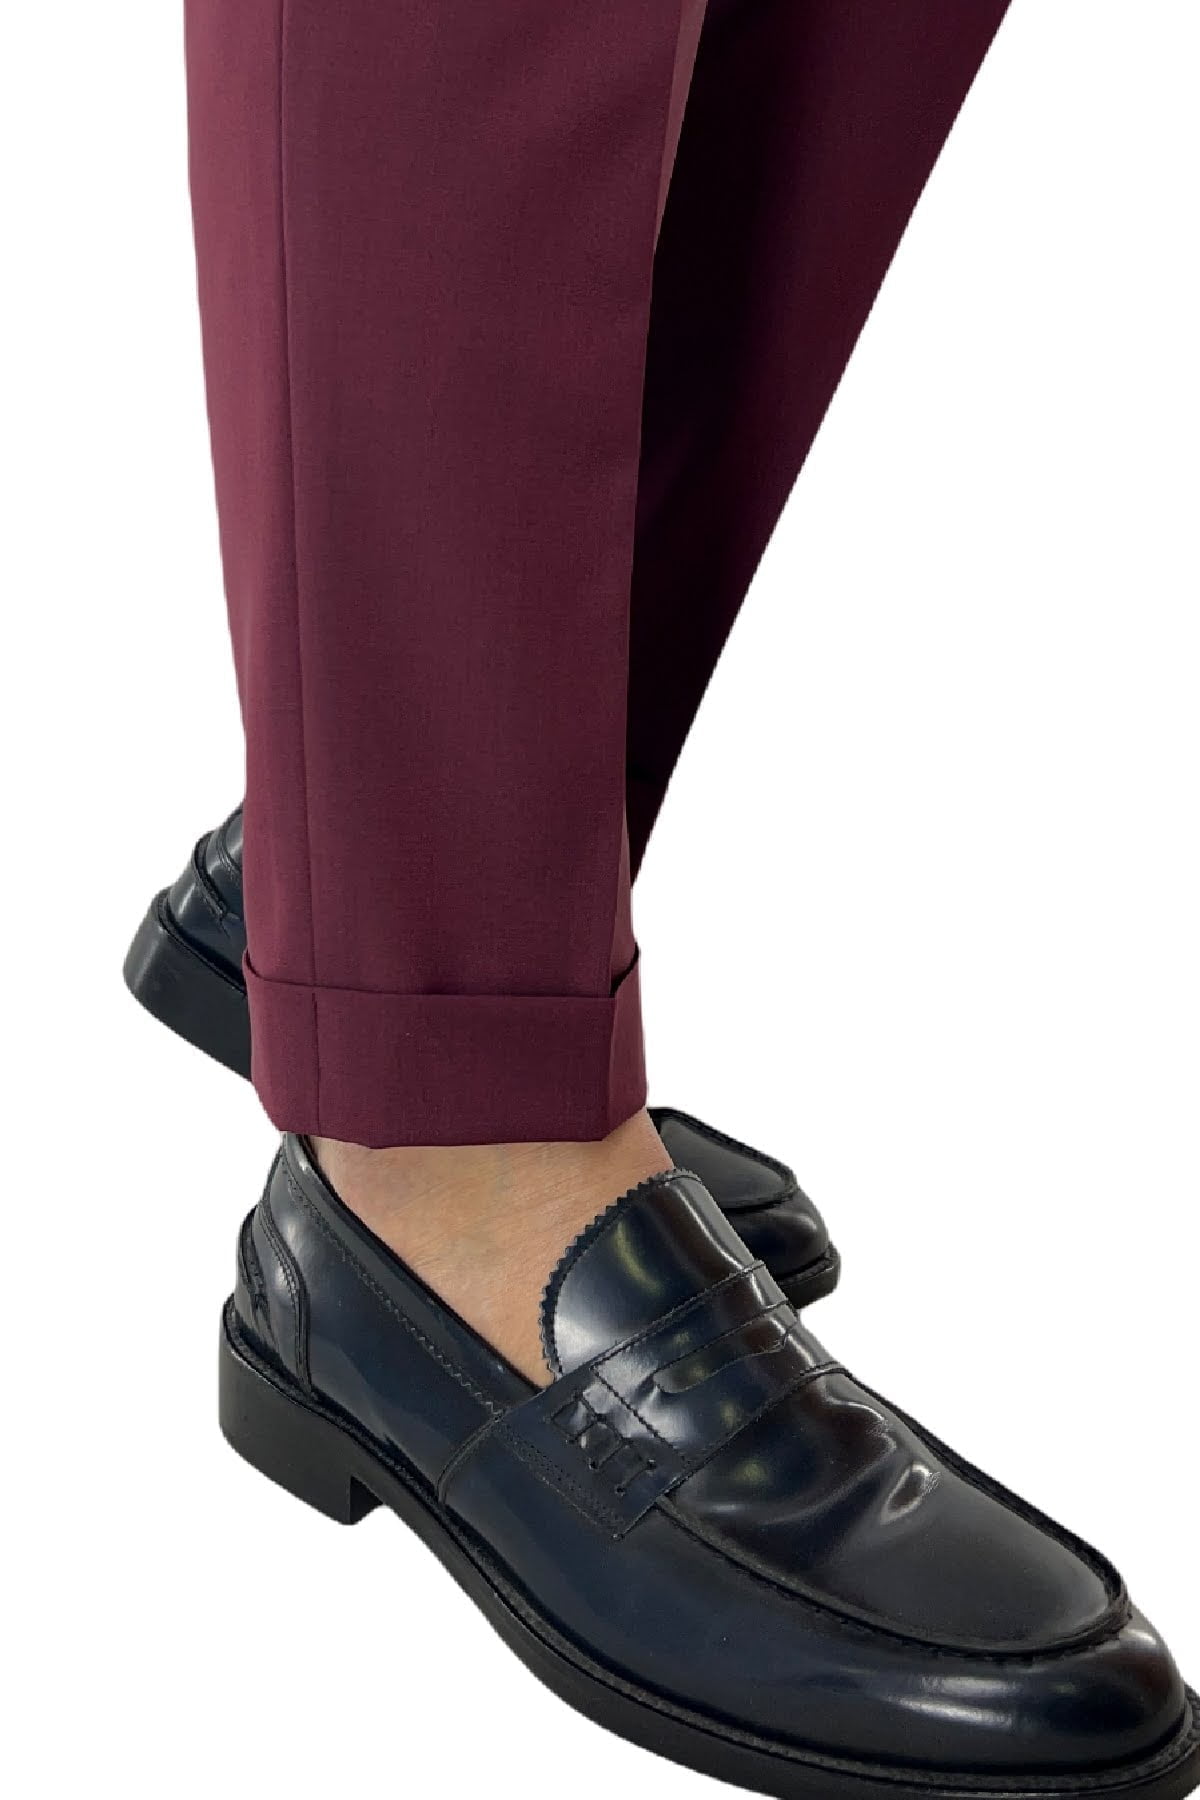 Pantalone uomo Bordeaux in fresco lana tinta unita vita alta con pinces fibbie laterali e risvolto 4cm